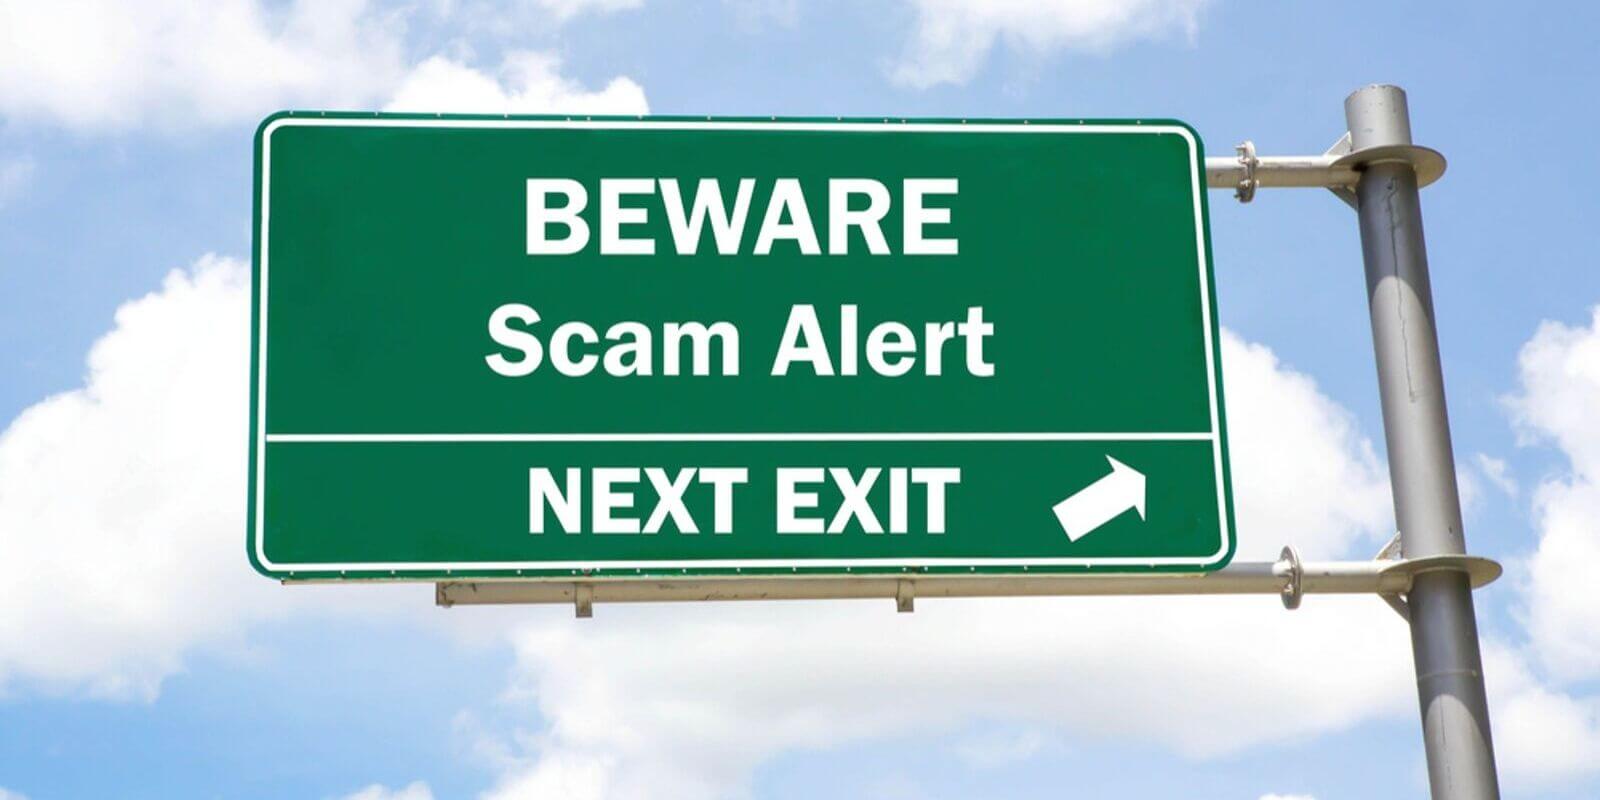 Le portefeuille Satowallet est qualifié d'exit scam par ses anciens utilisateurs